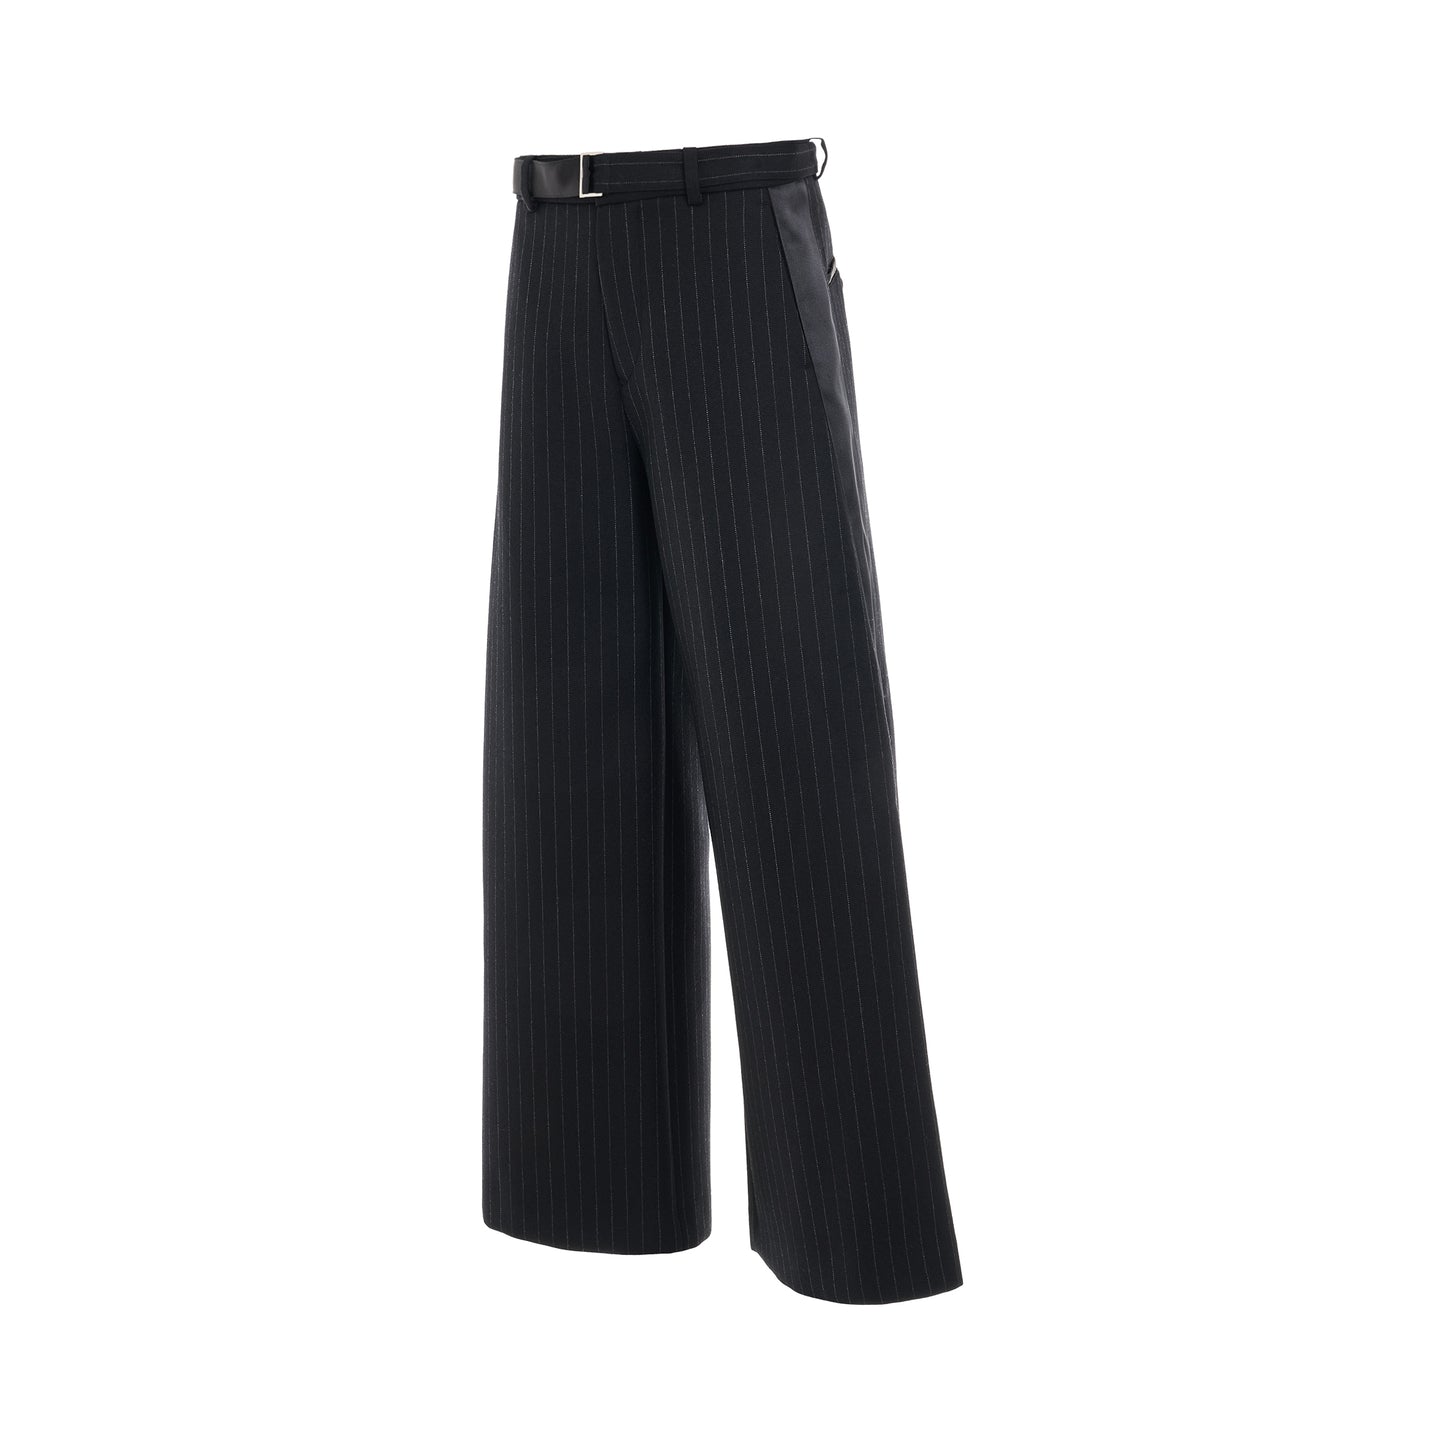 Chalk Stripe Bonding Pants in Black